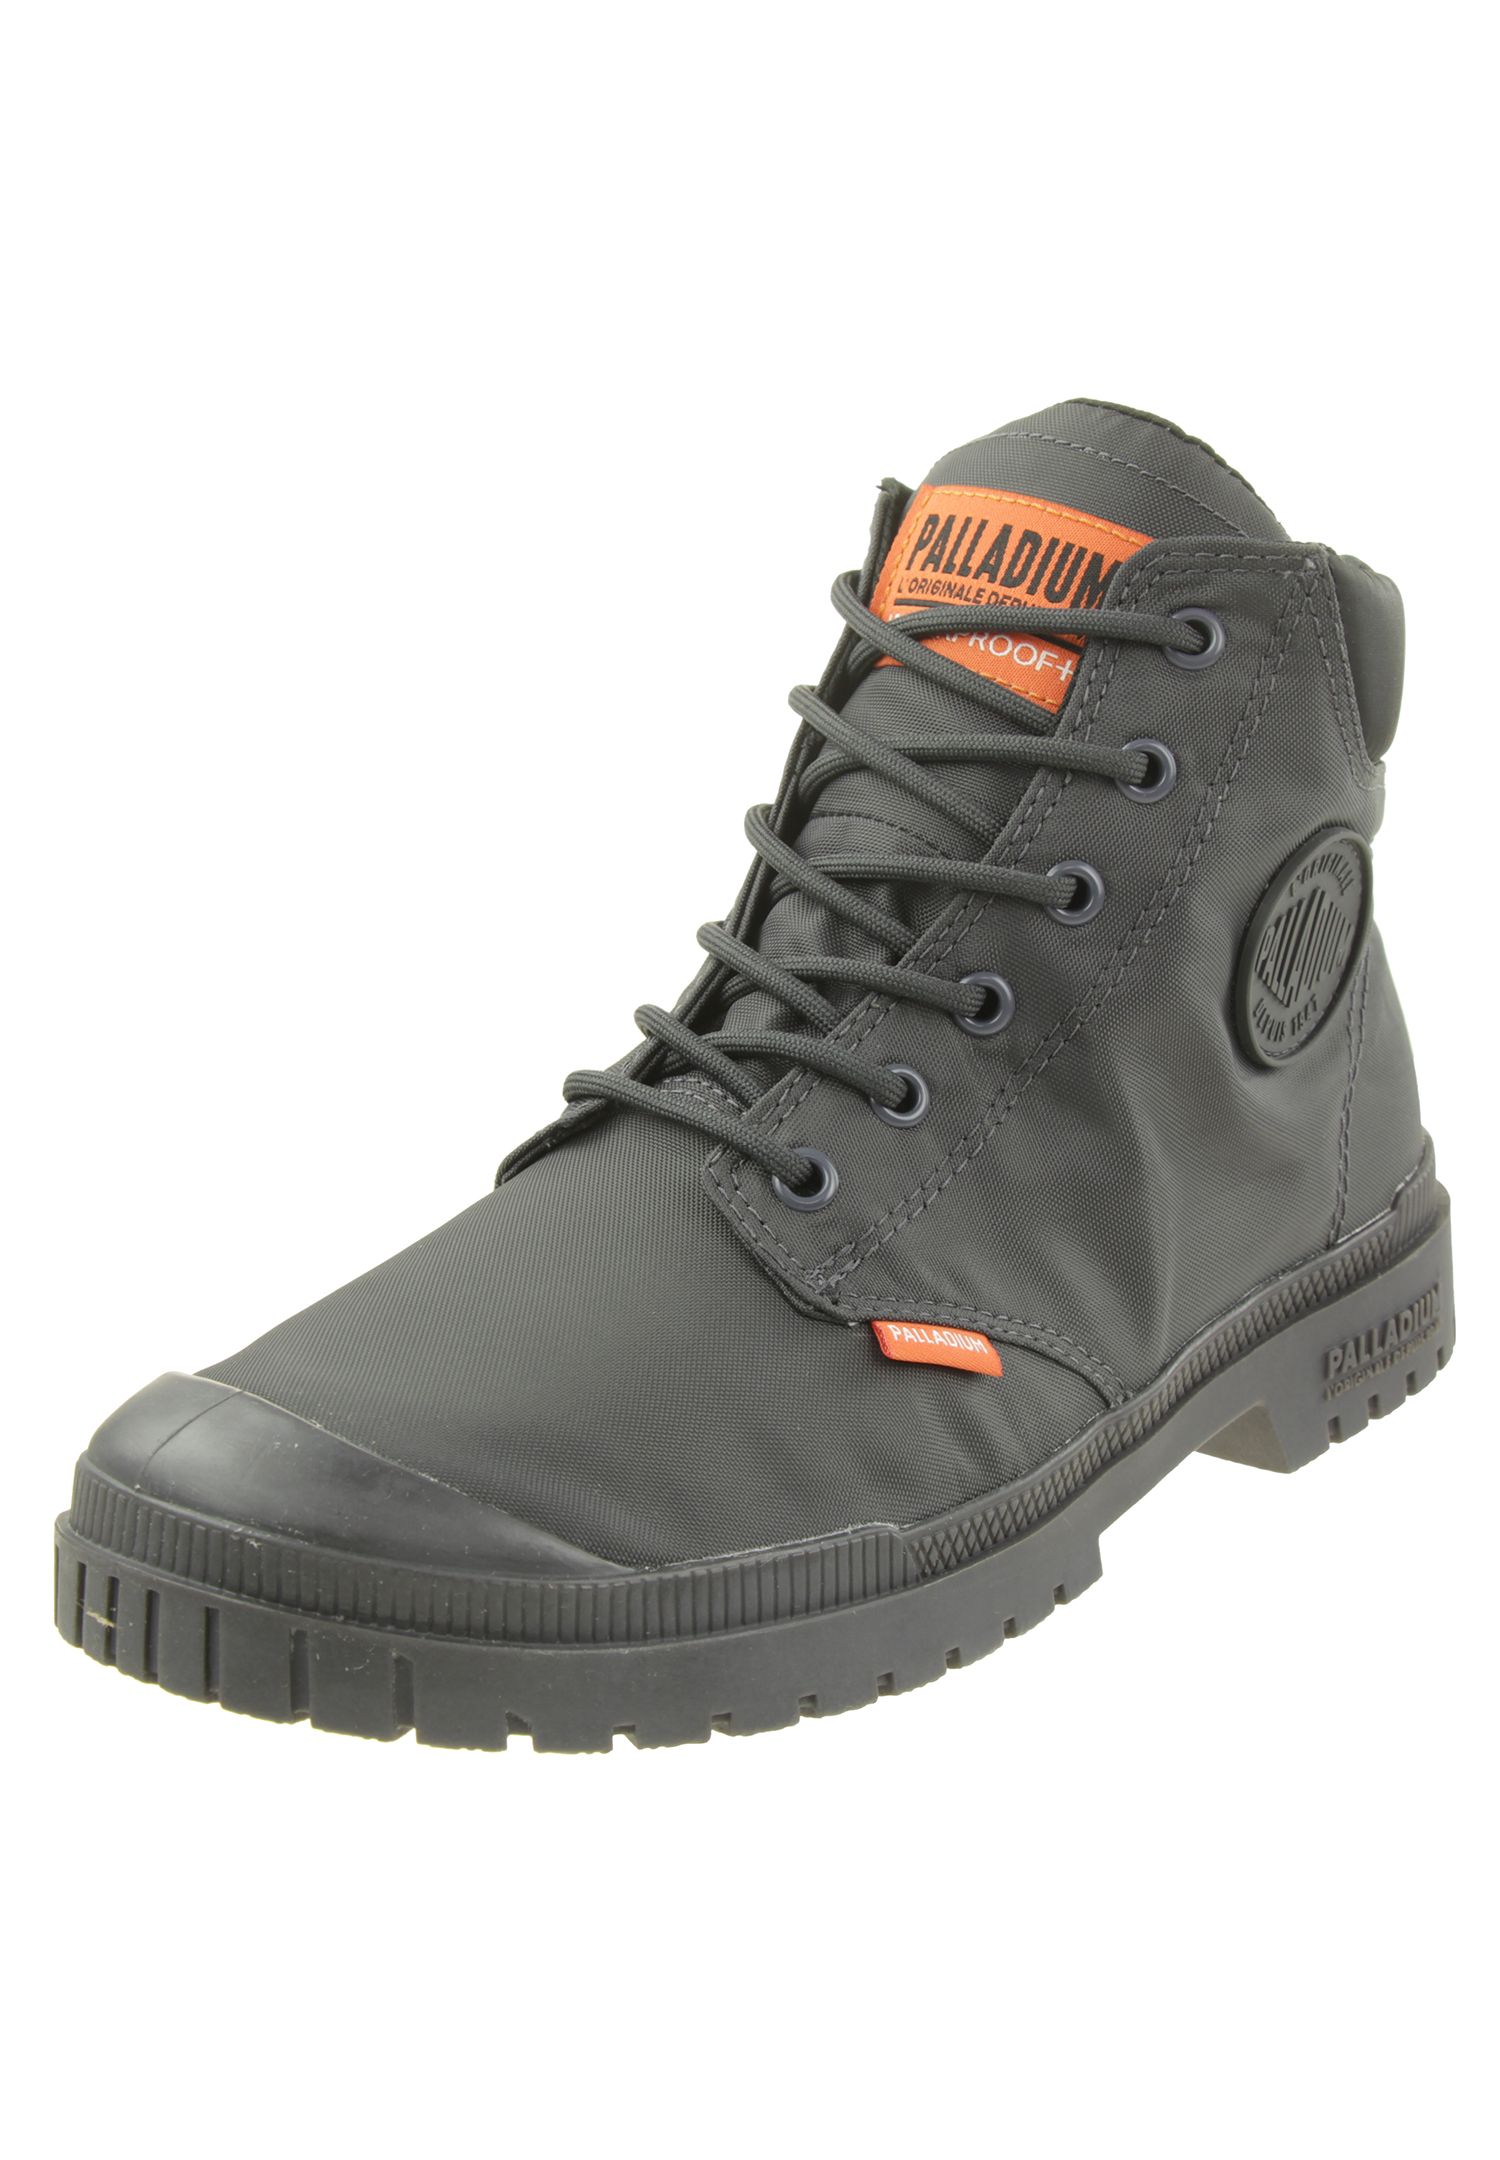 PALLADIUM Herren Pampa SP20 Cuff WP+  Ankle Boots Stiefelette 76835 021 grau von Palladium